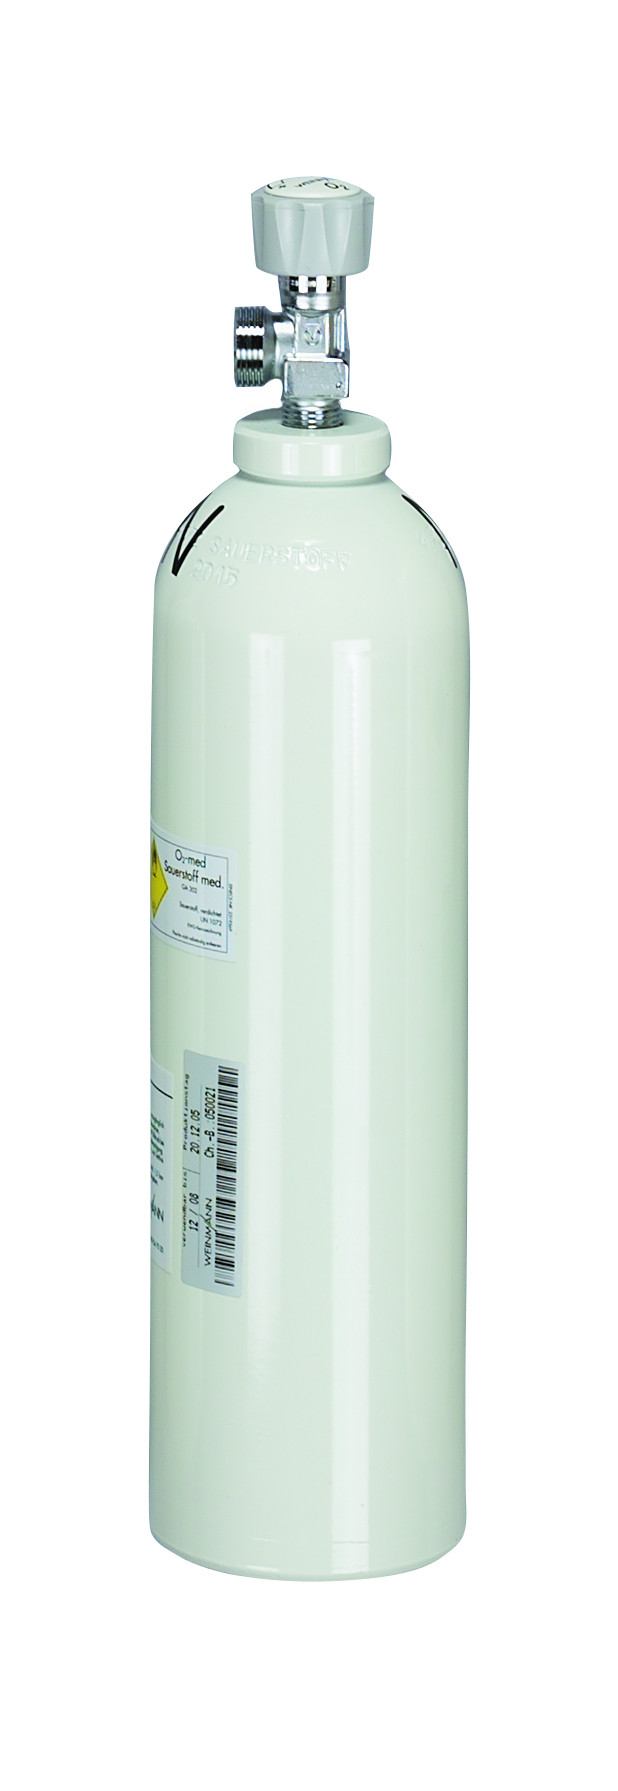 Sauerstoffflasche 2,0 Liter Alu gebürstet - SAN-SHOP Erste-Hilfe